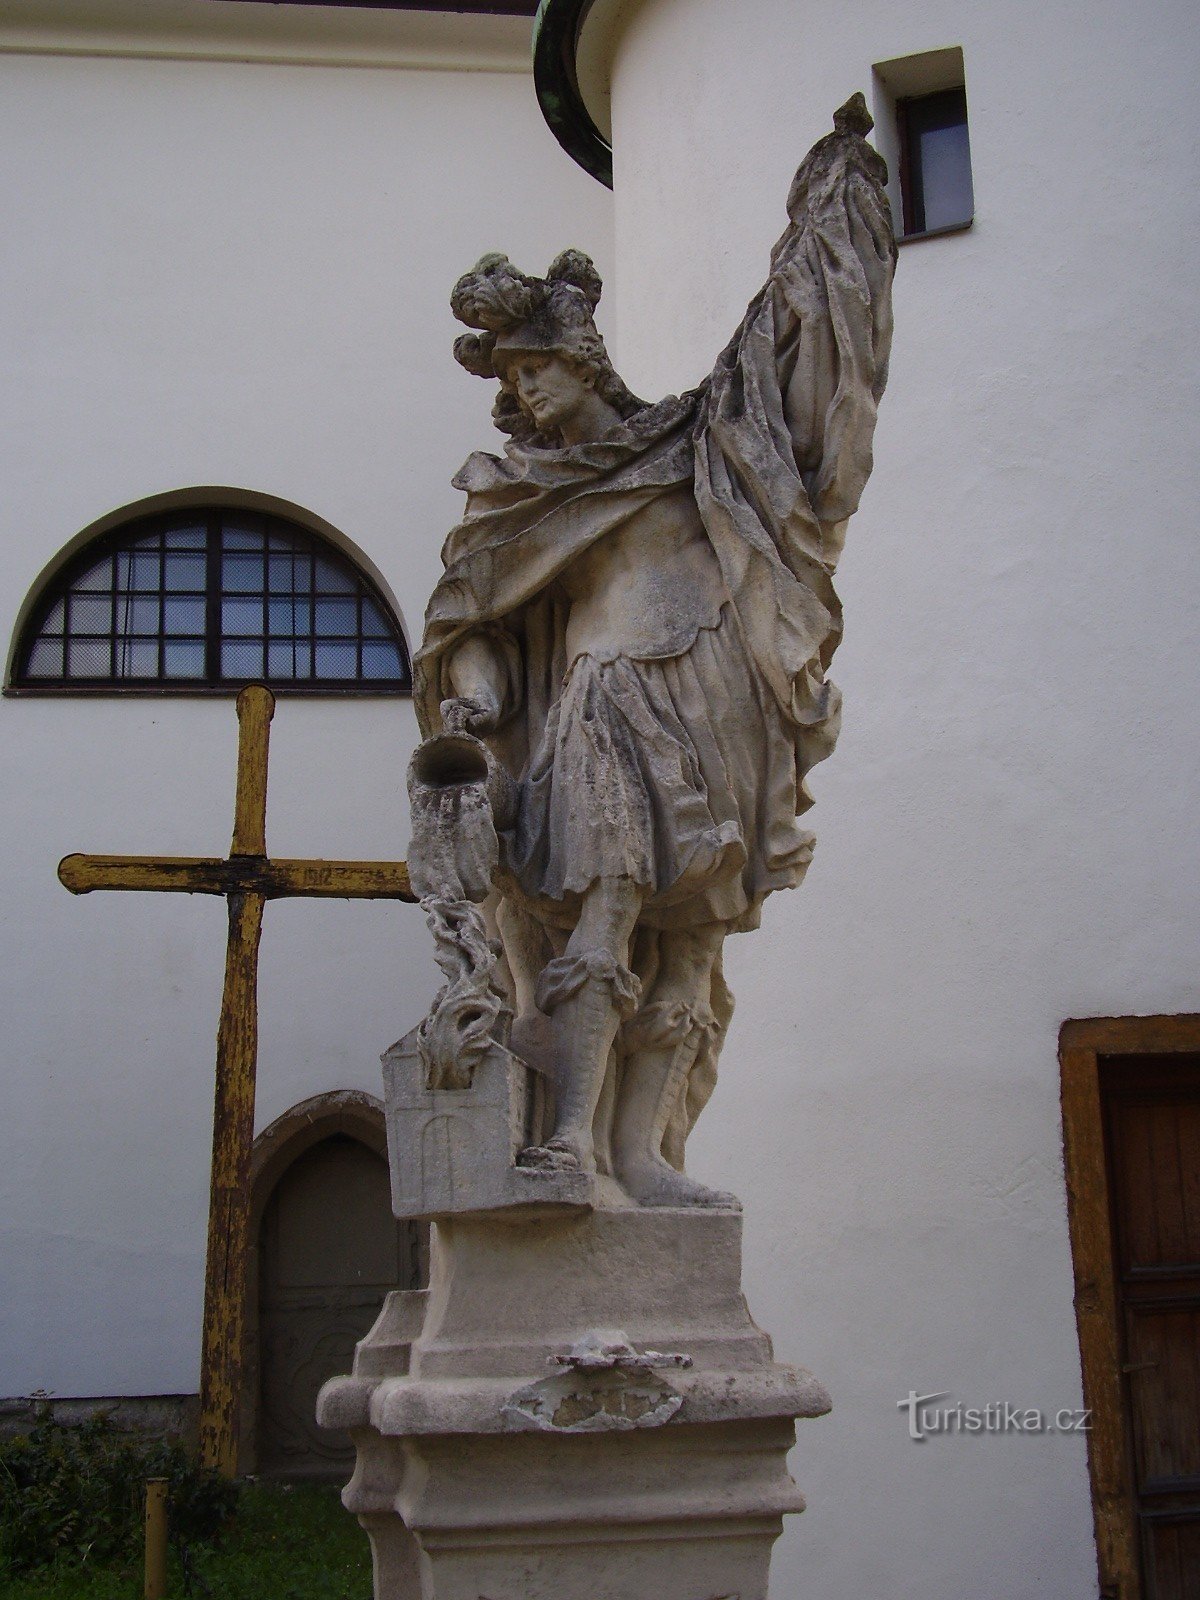 Άγαλμα του Αγ. Florian στο Rosice κοντά στο Μπρνο